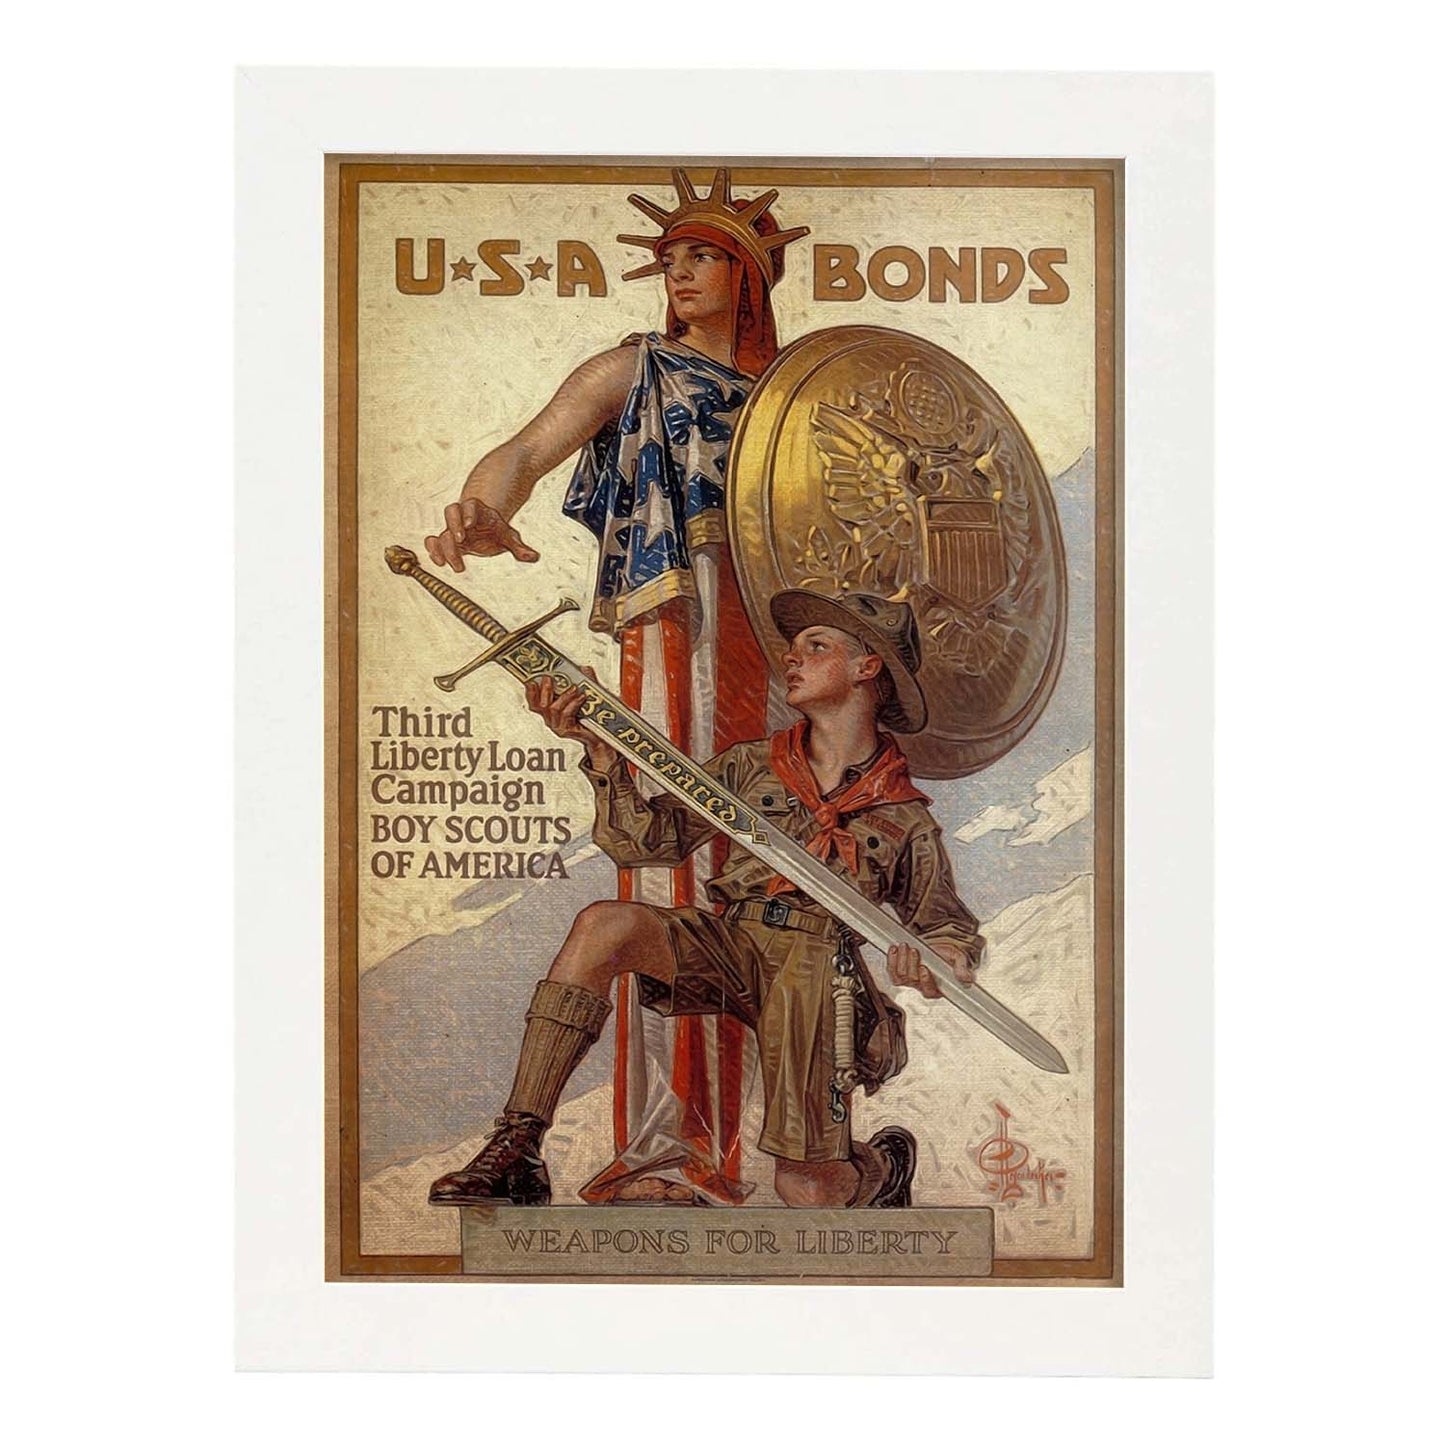 Poster vintage de Bonos de USA. con imágenes vintage y de publicidad antigua.-Artwork-Nacnic-A3-Marco Blanco-Nacnic Estudio SL